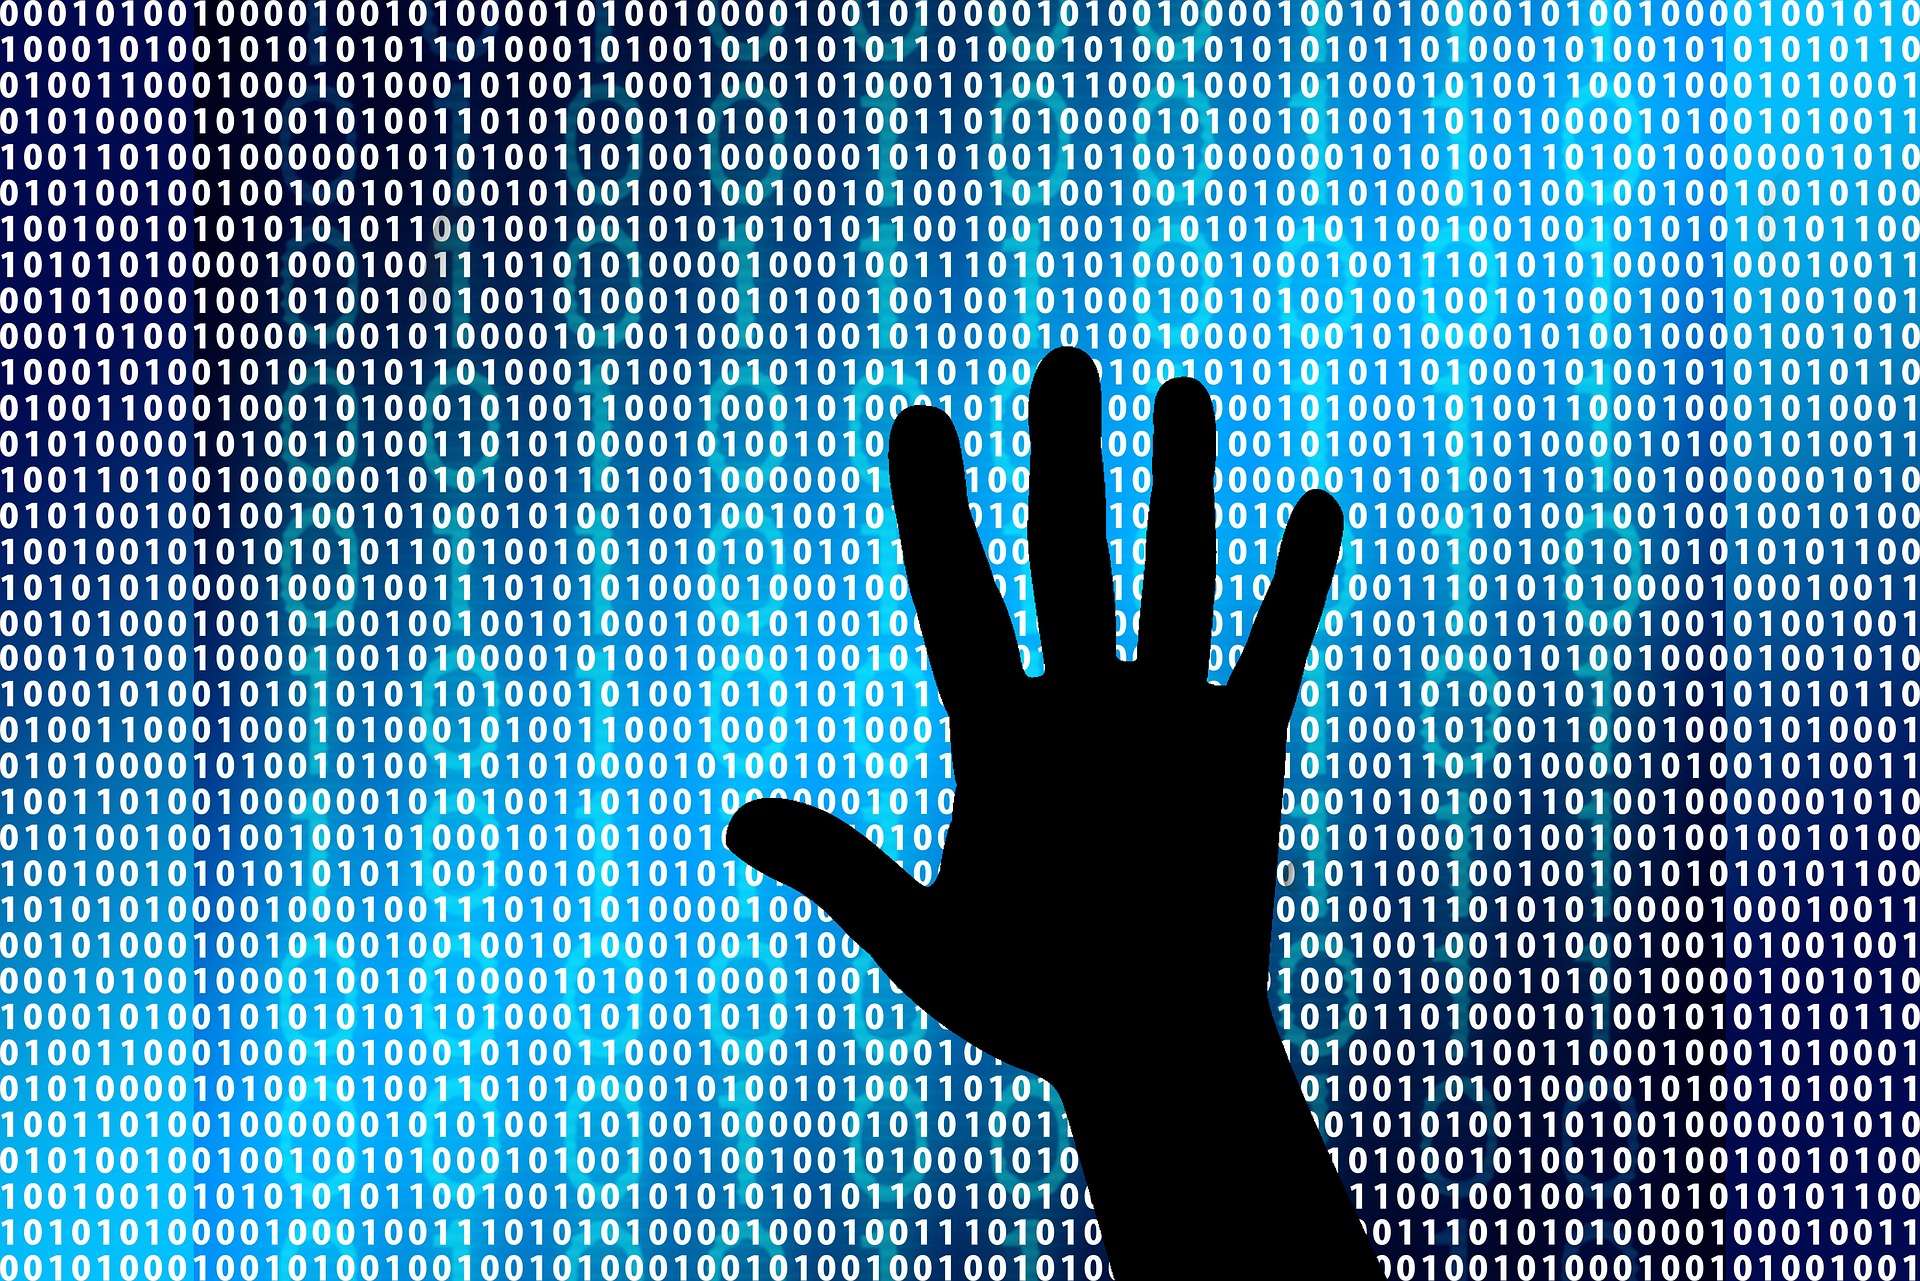 Sind Cyberversicherungen sinnvoll?